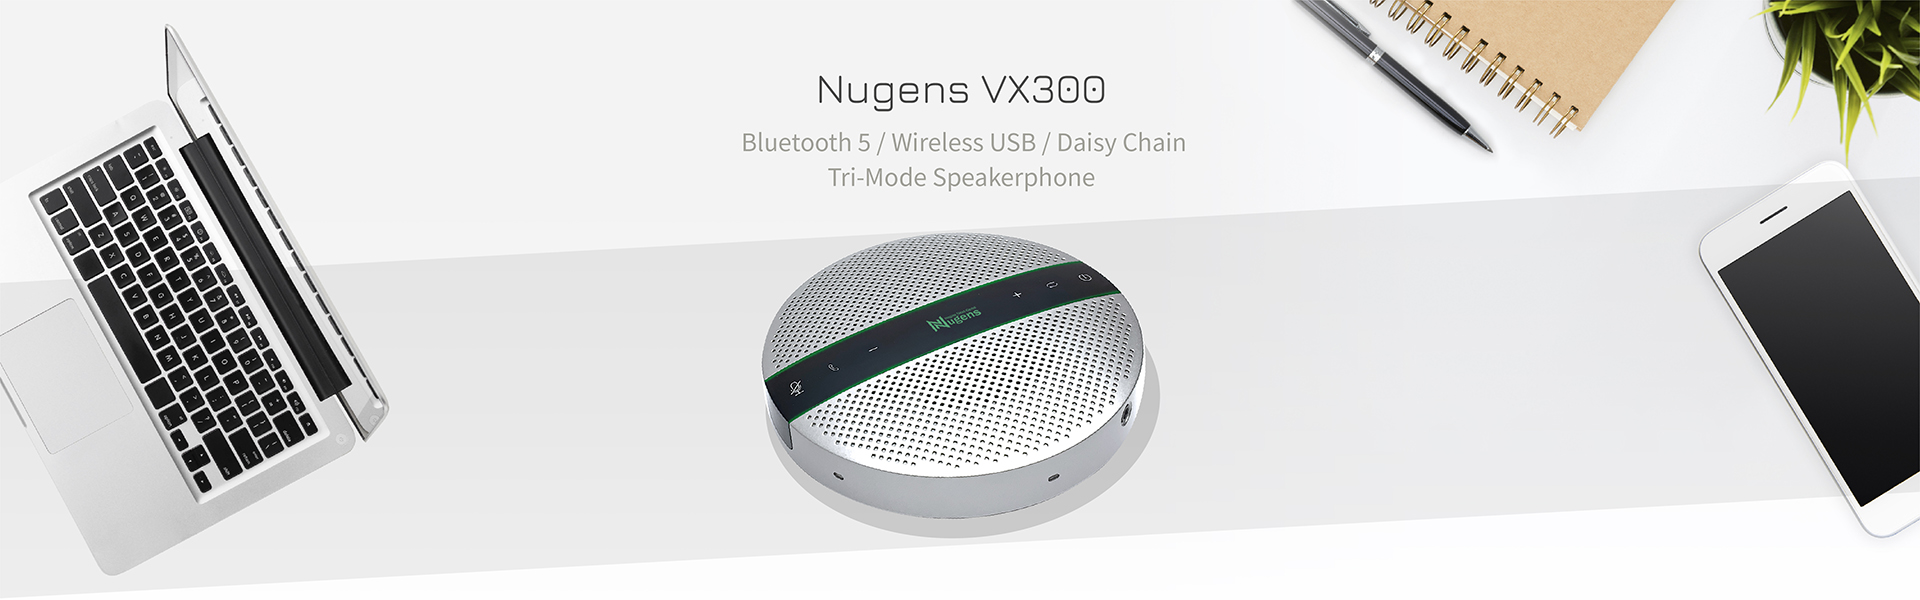 Nugens VX300 Tri-Mode Speakerphone